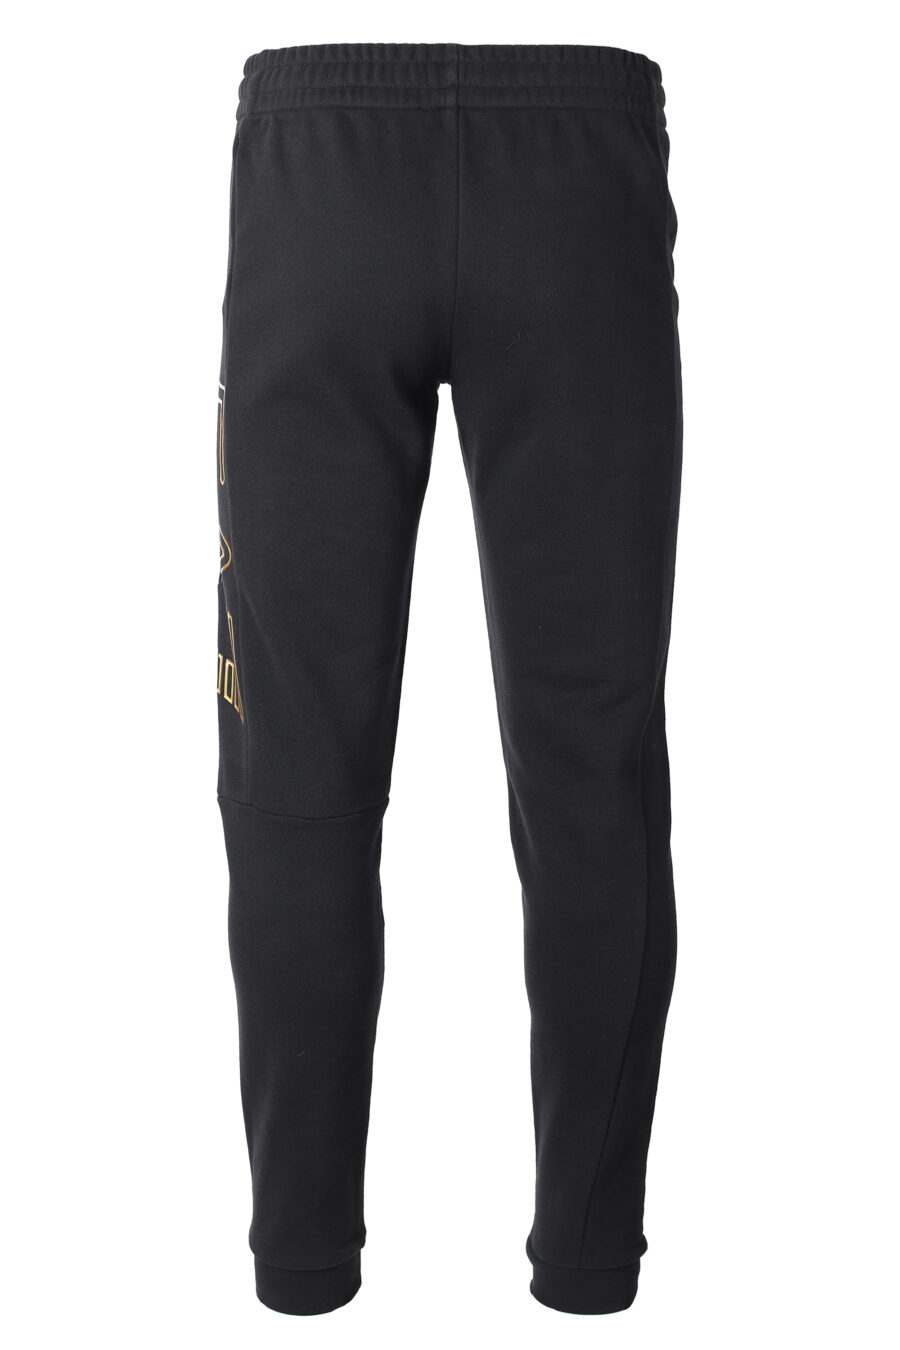 Pantalón de chándal negro con maxilogo bicolor lateral - IMG 9883